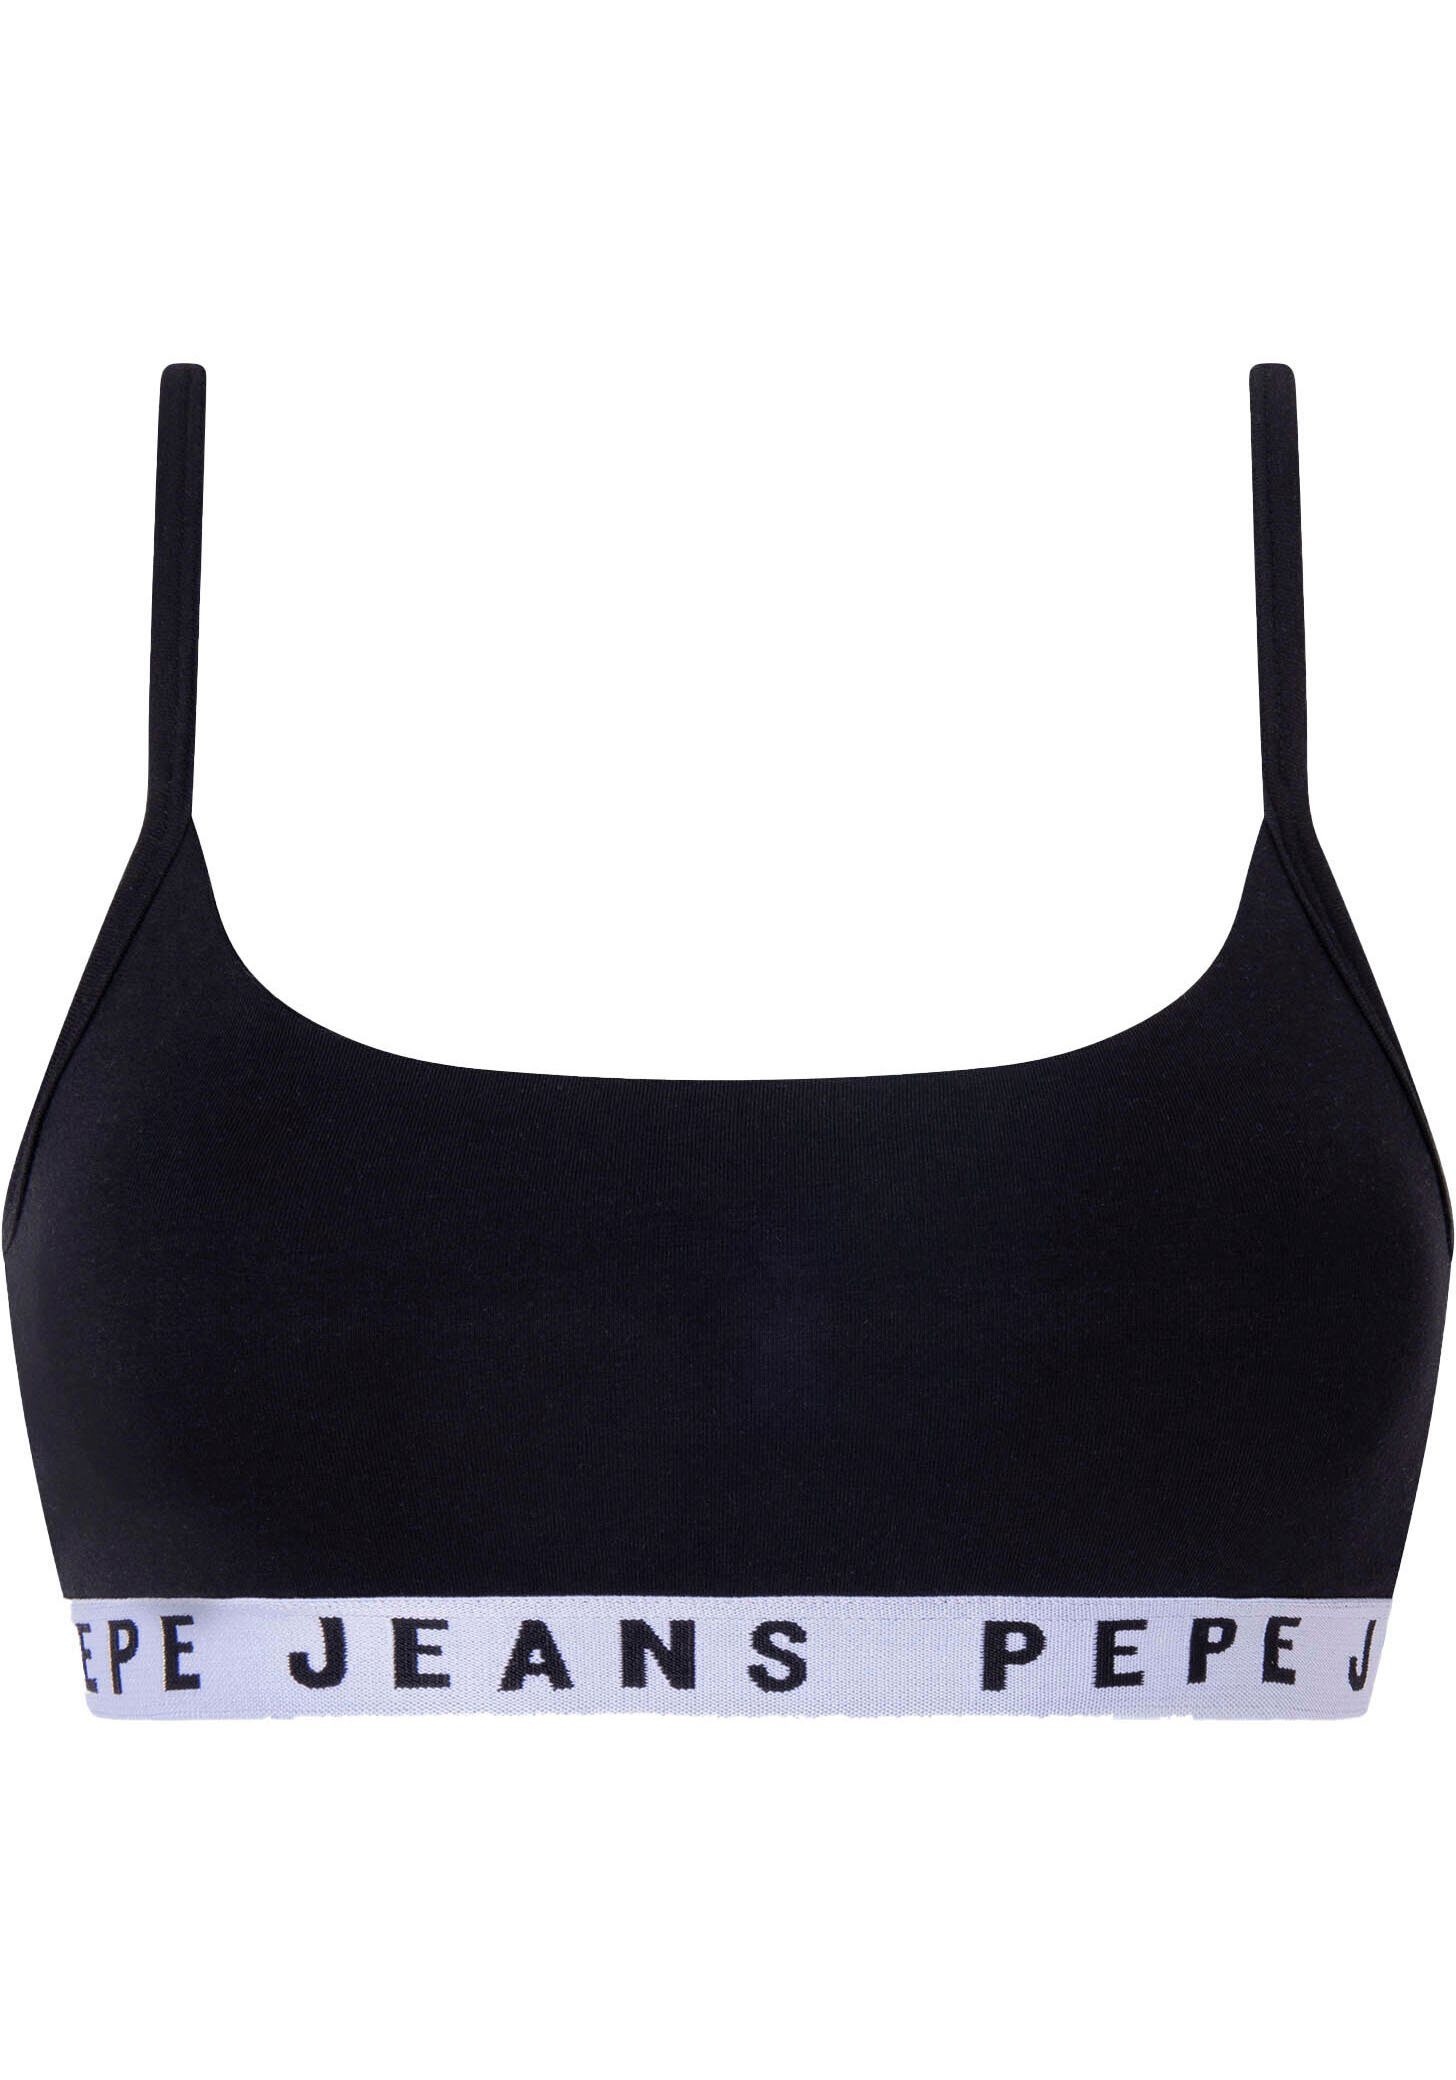 Pepe Jeans Bustier Logo schwarz